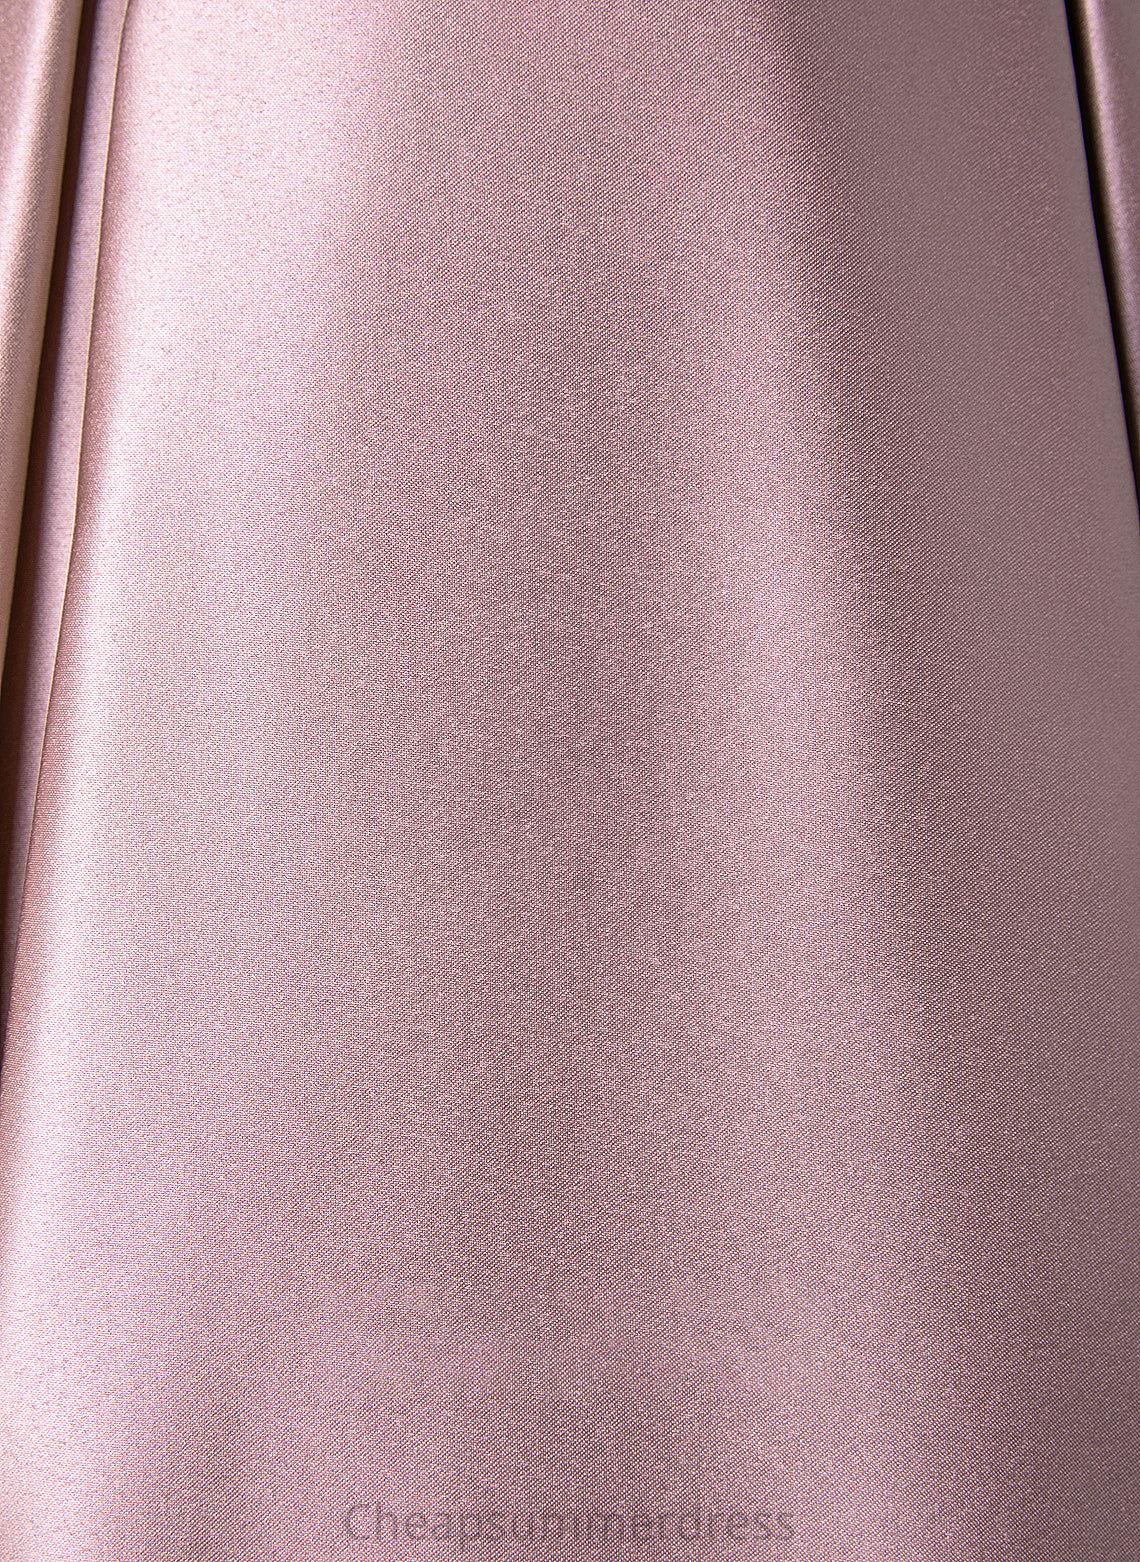 Silhouette Pockets Fabric Length Neckline A-Line Floor-Length Off-the-Shoulder Embellishment Princess V-Neck A-Line/Princess